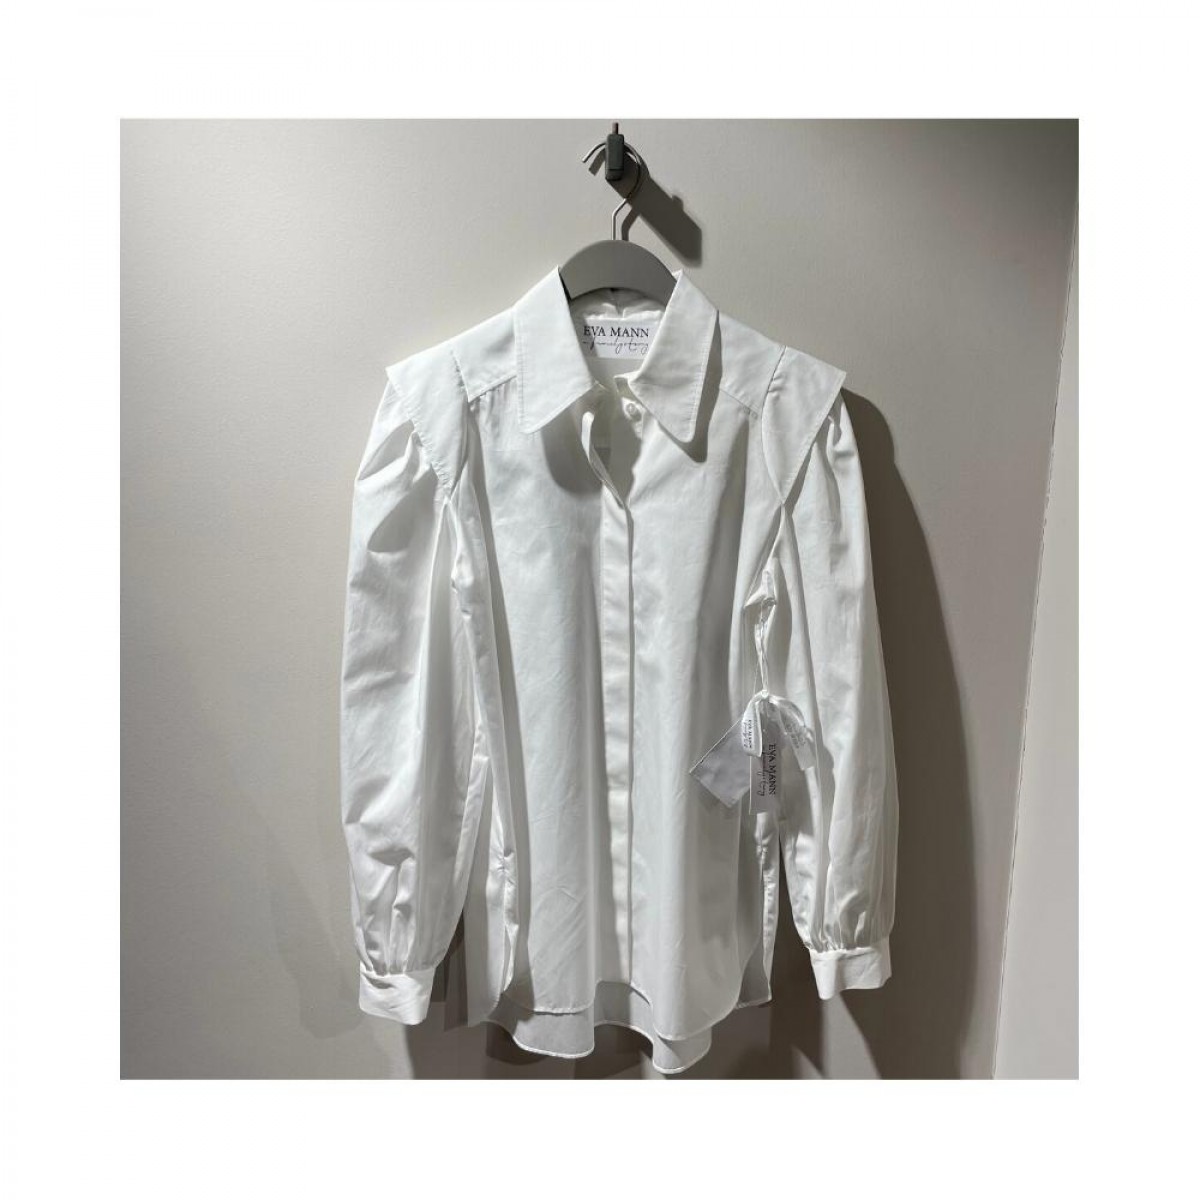 margret skjorte - white - front